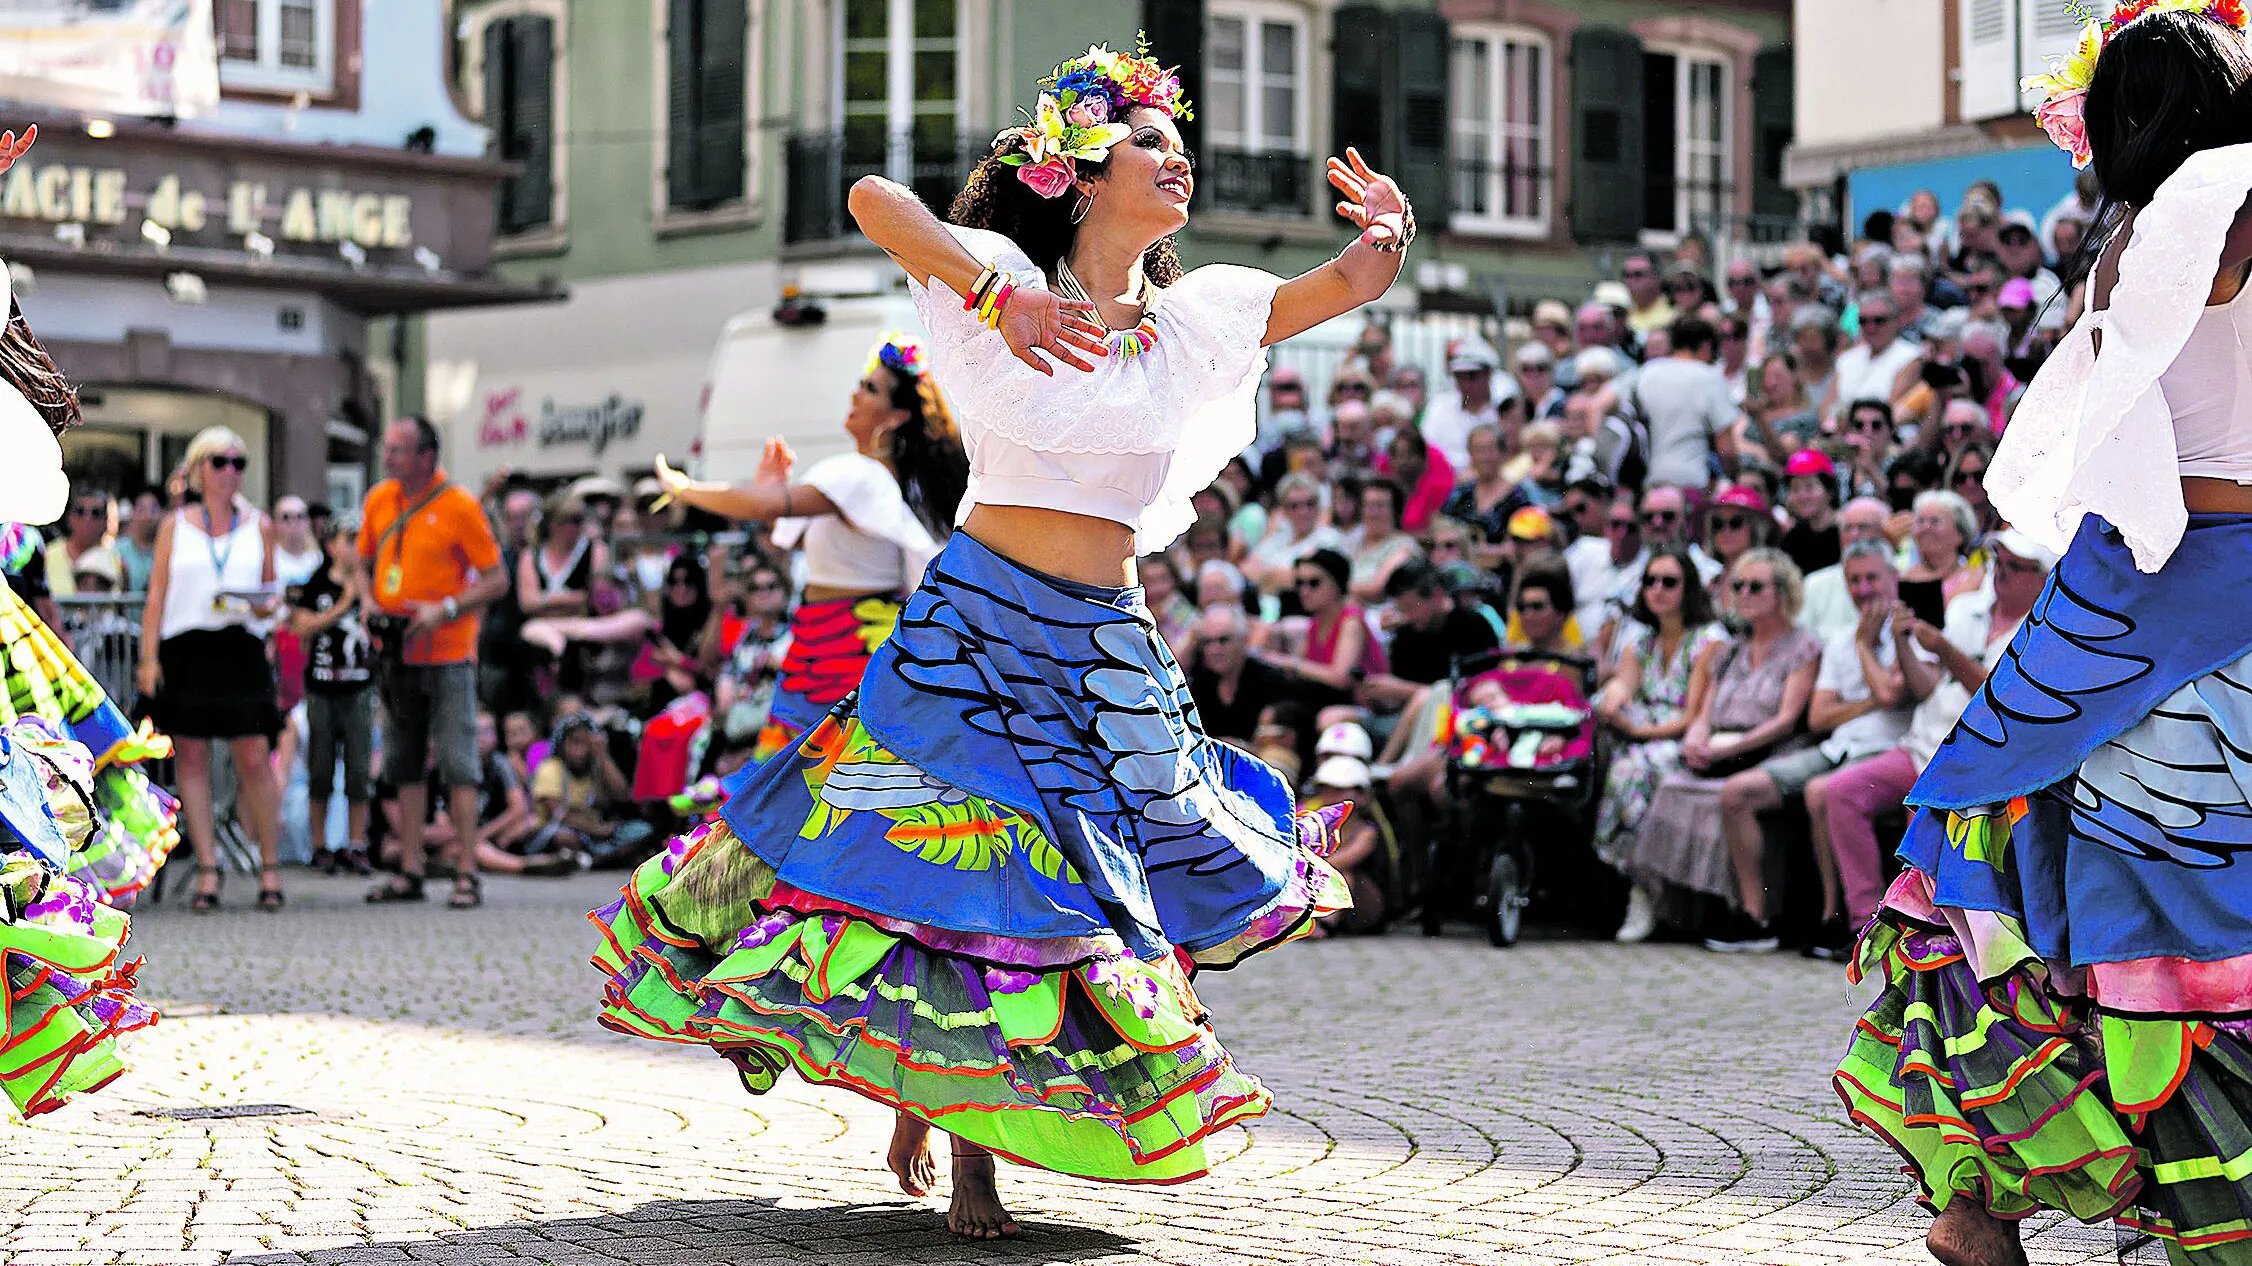 Elementos como a saia de carimbó deixam os europeus encantados com o Balé Folclórico da Amazônia